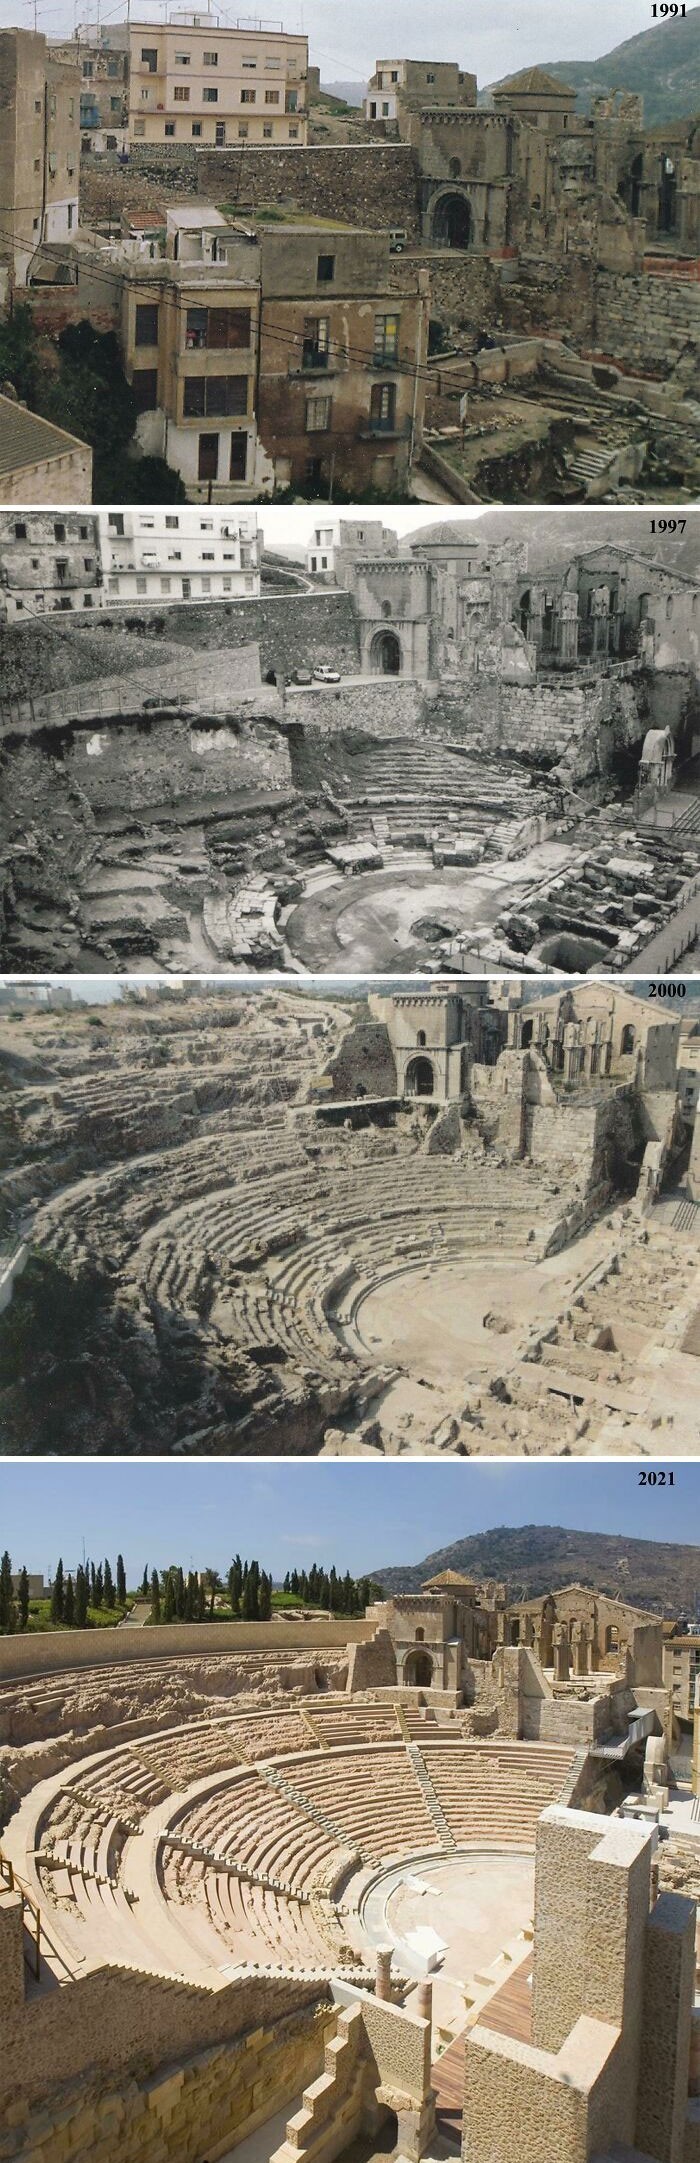 Rzymski teatr w Kartagenie (region Murcja, Hiszpania) 1991 vs 2021